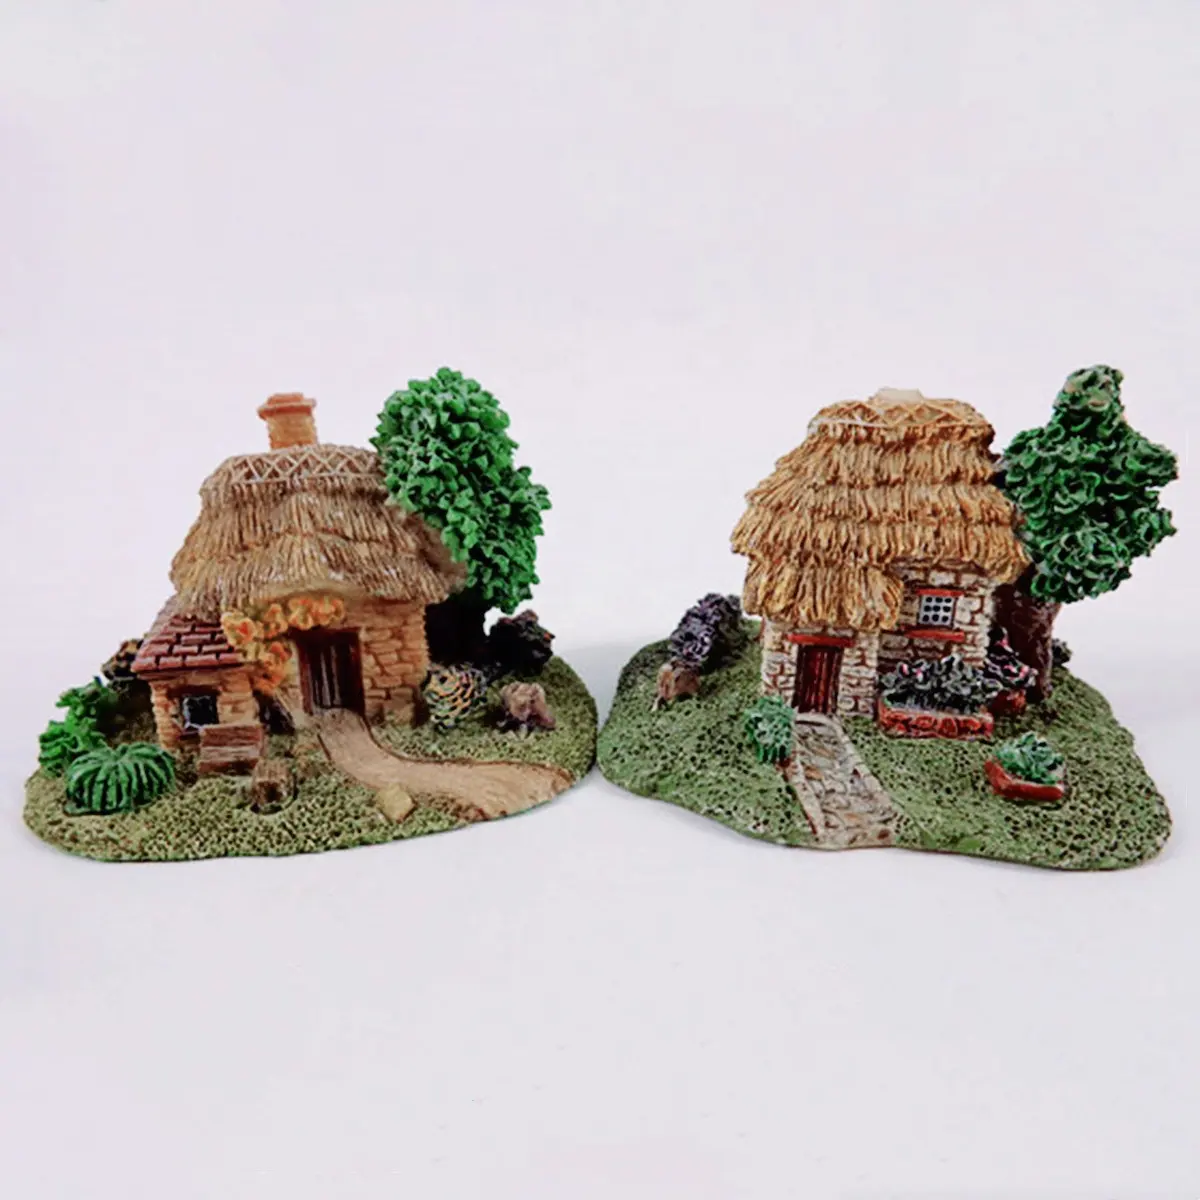 Da collezione stile arte popolare in resina piccolo villaggio ornamento casa in miniatura poliresine con tema fata